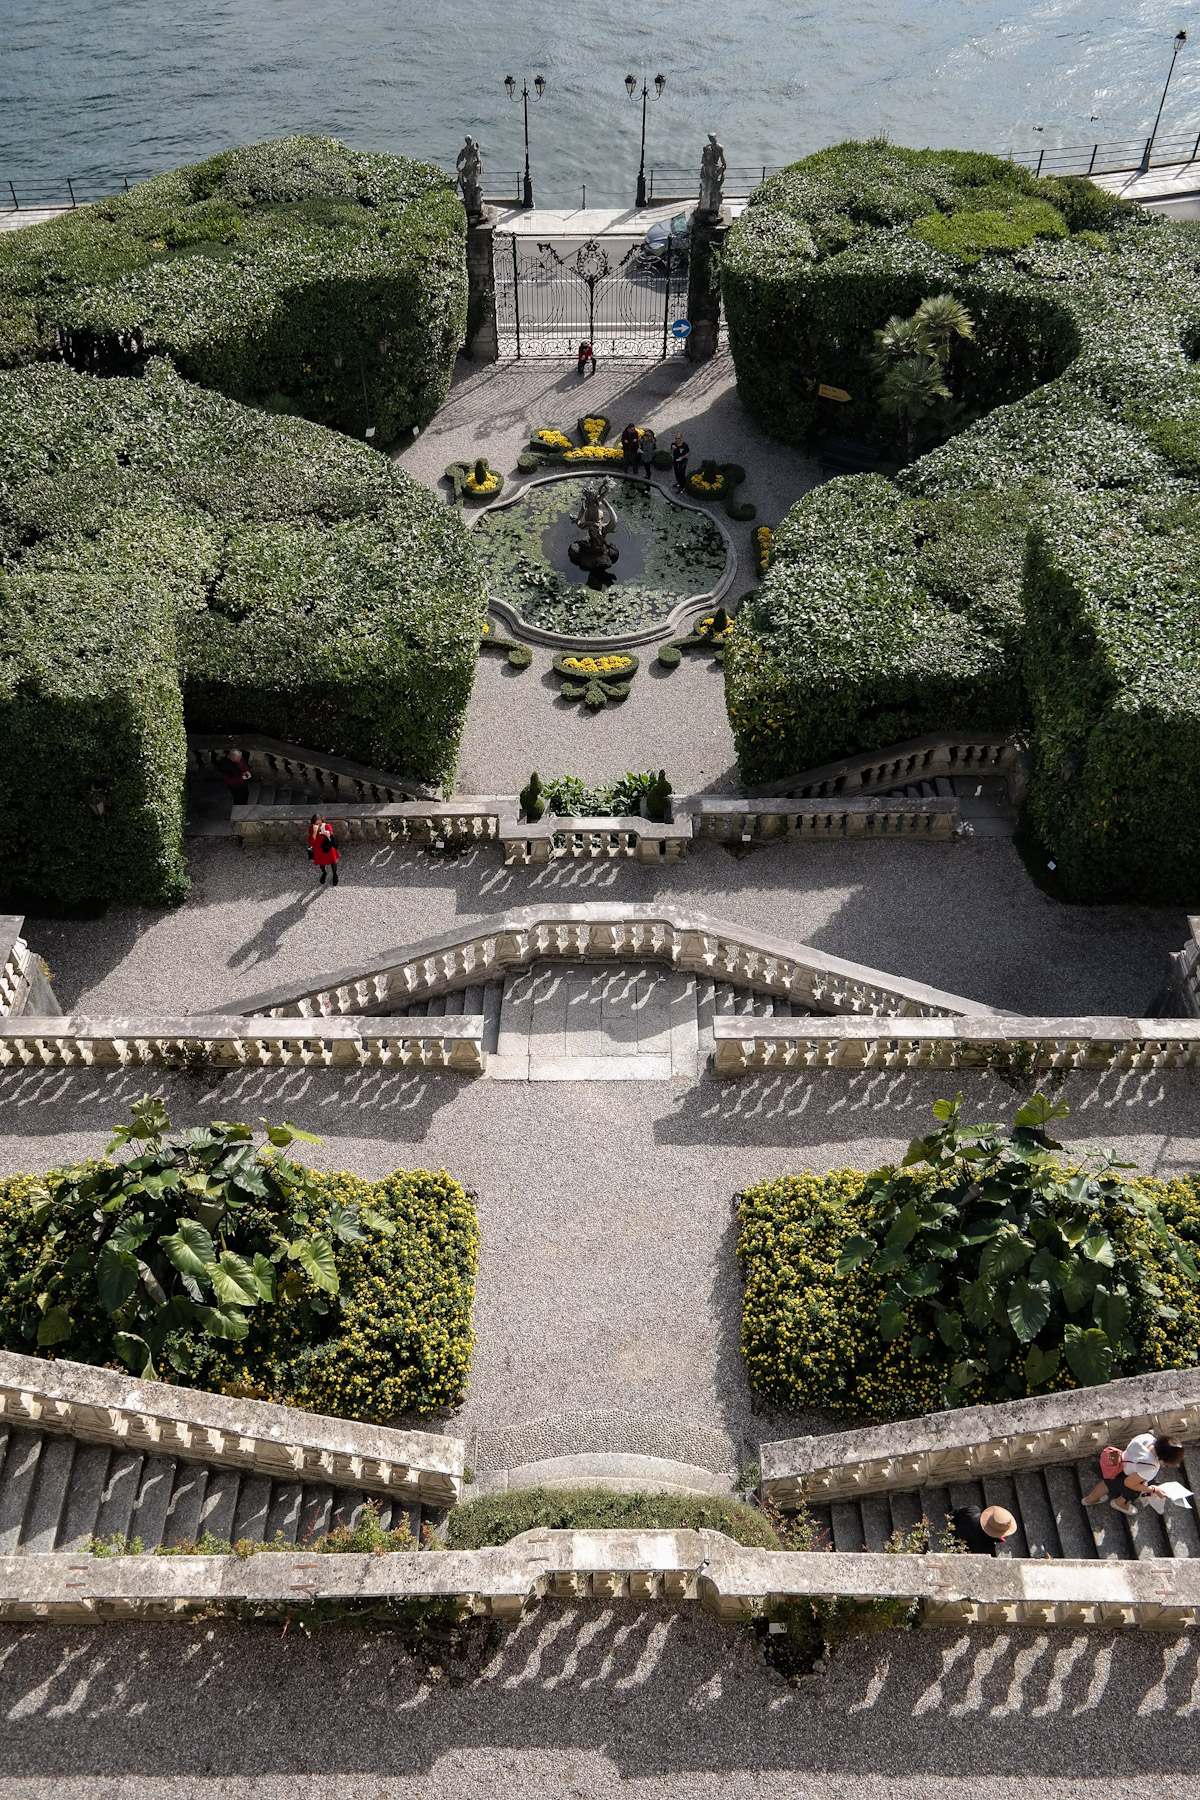 Aerial View of Italian Gardens at Villa Carlotta, Tremezzina, Italy